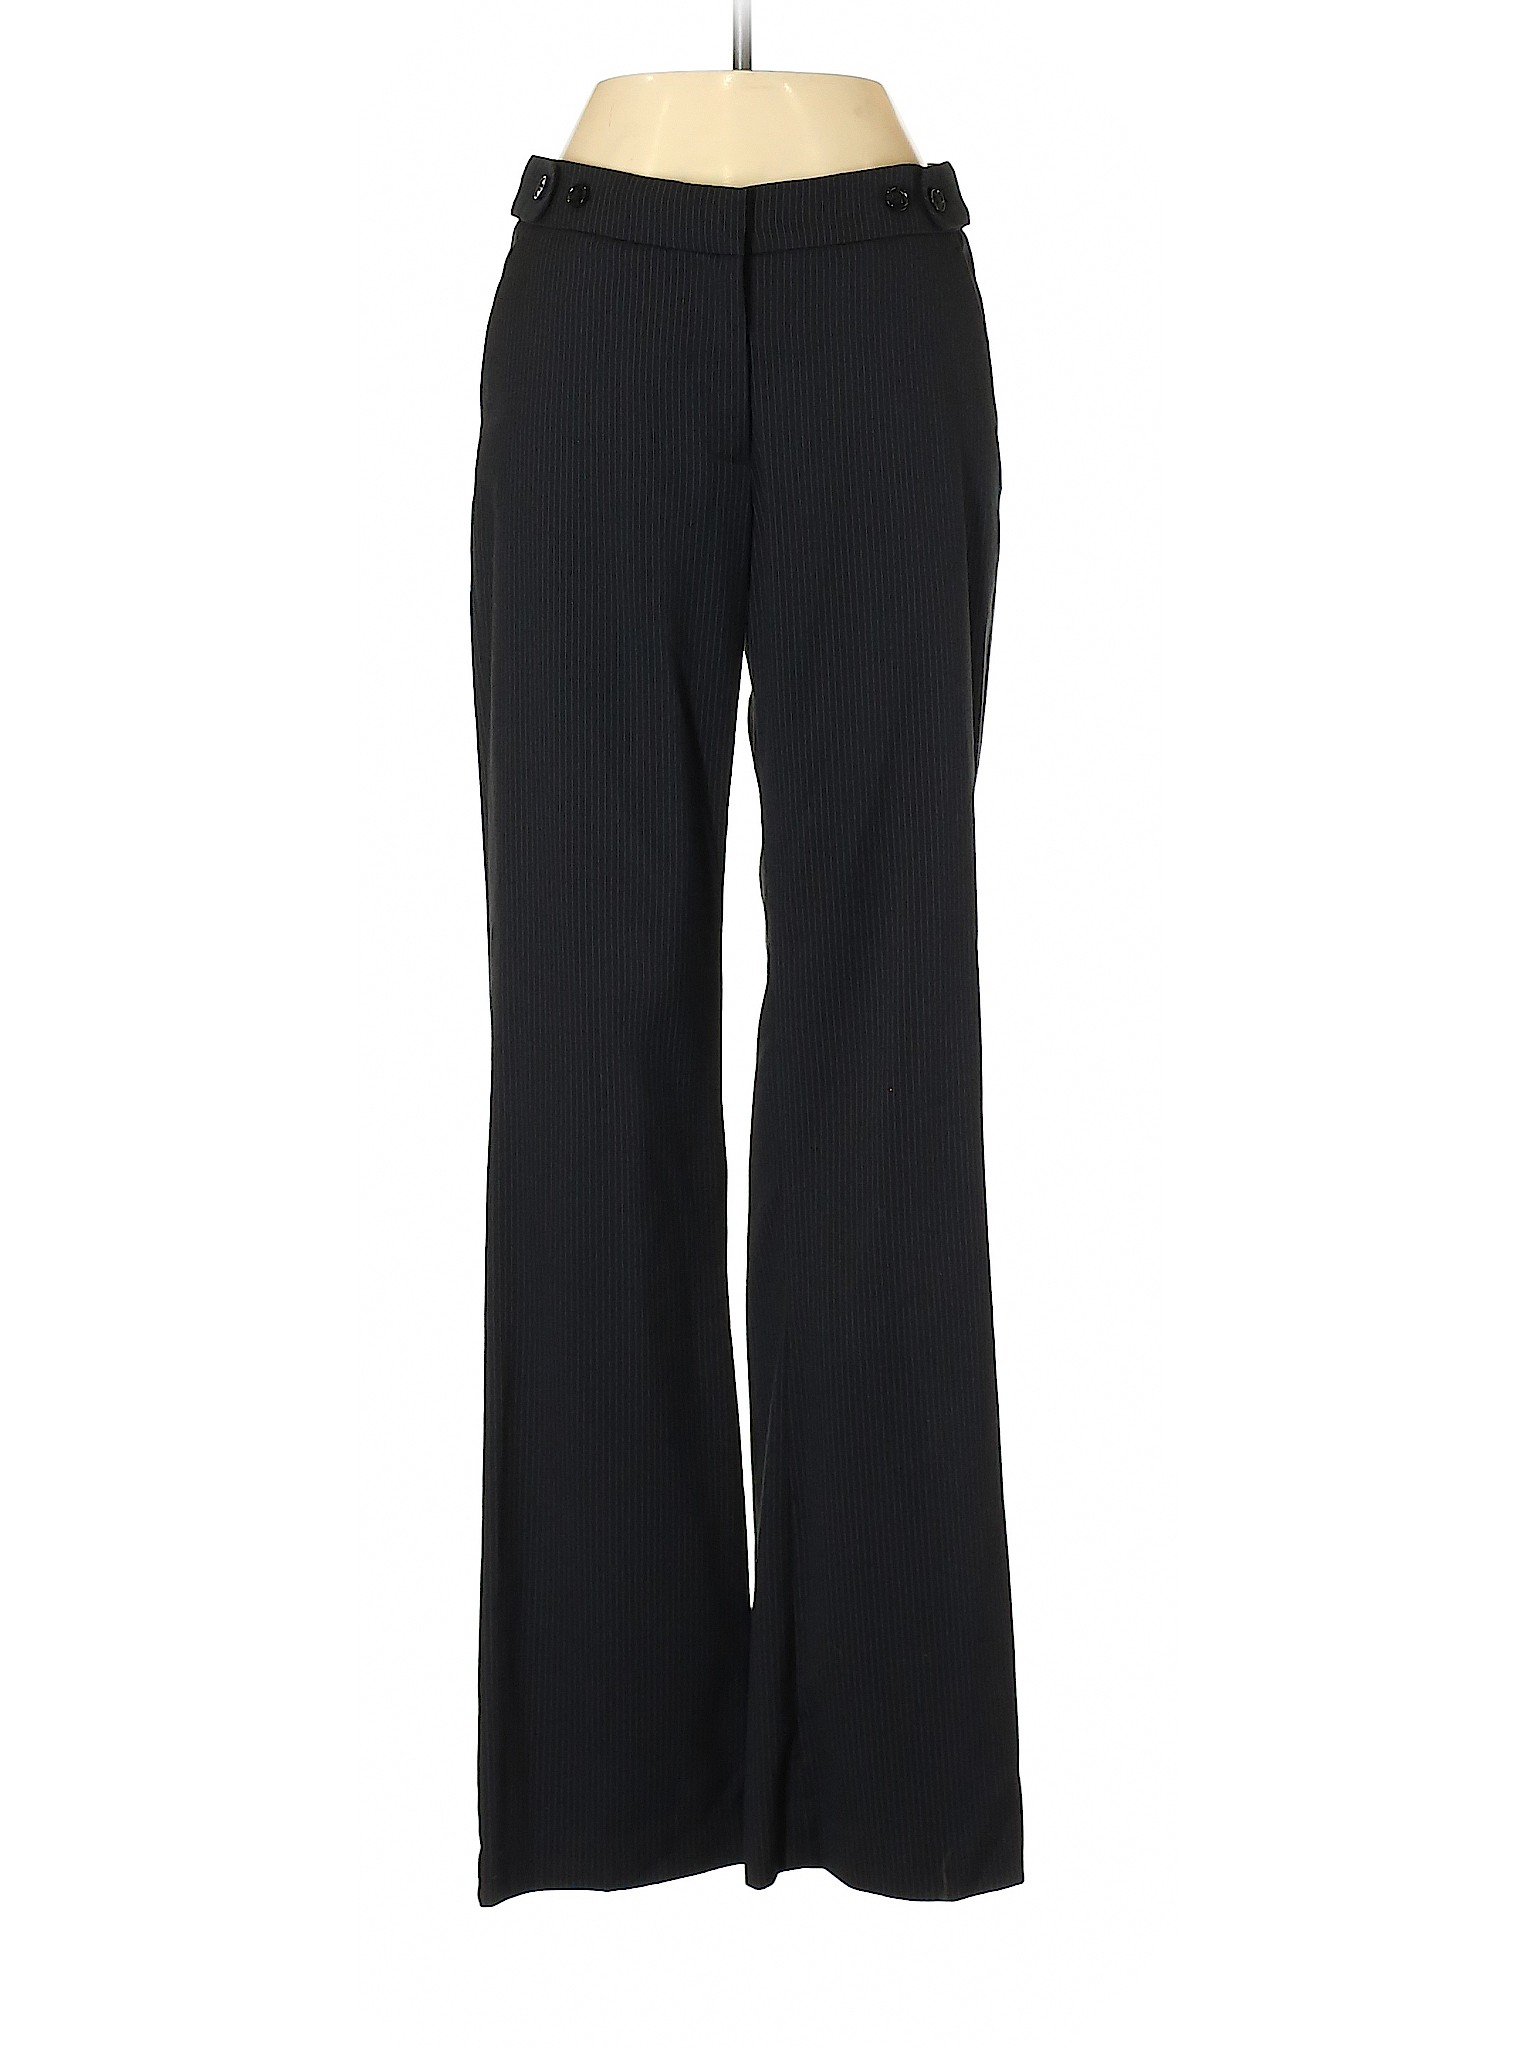 H&M Women Black Dress Pants 4 | eBay